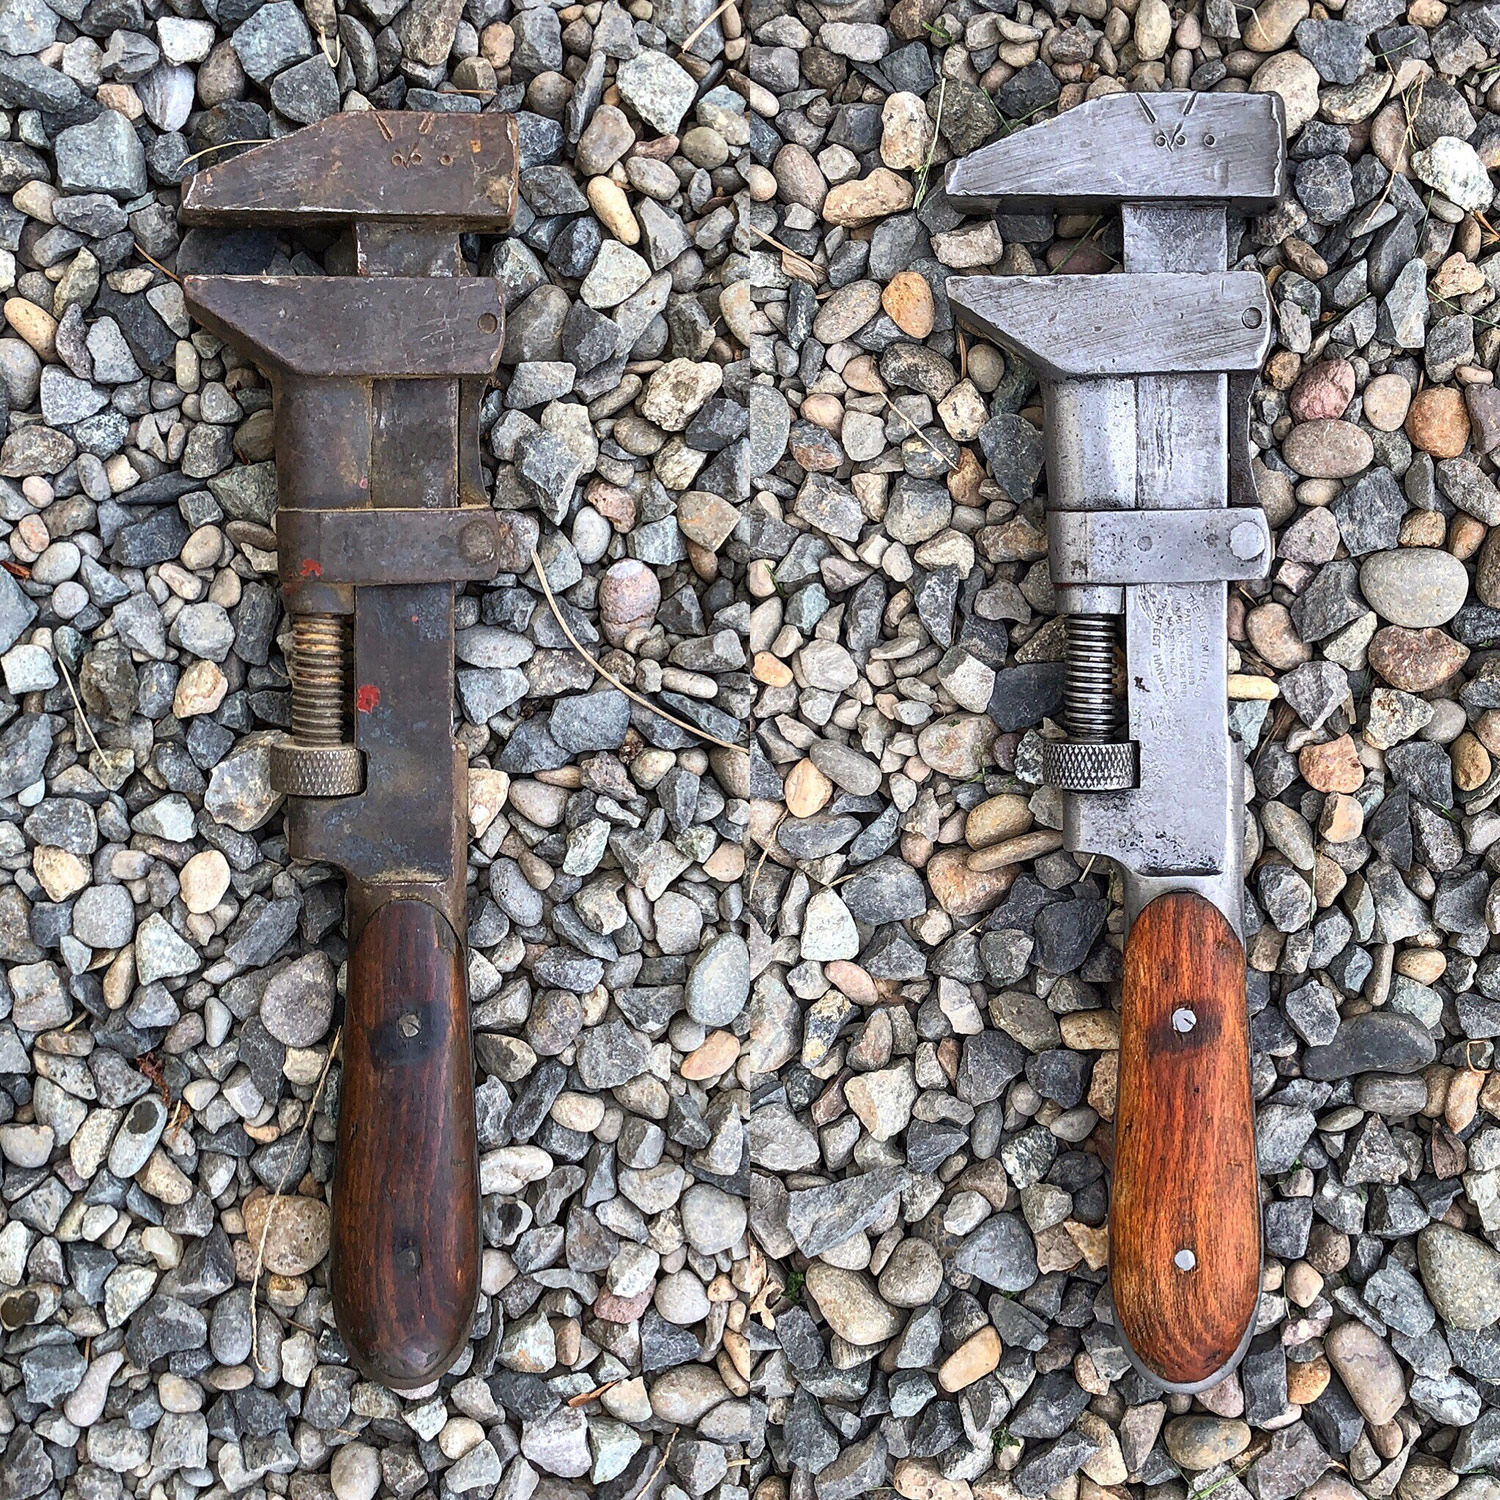 Antique wrench restoration